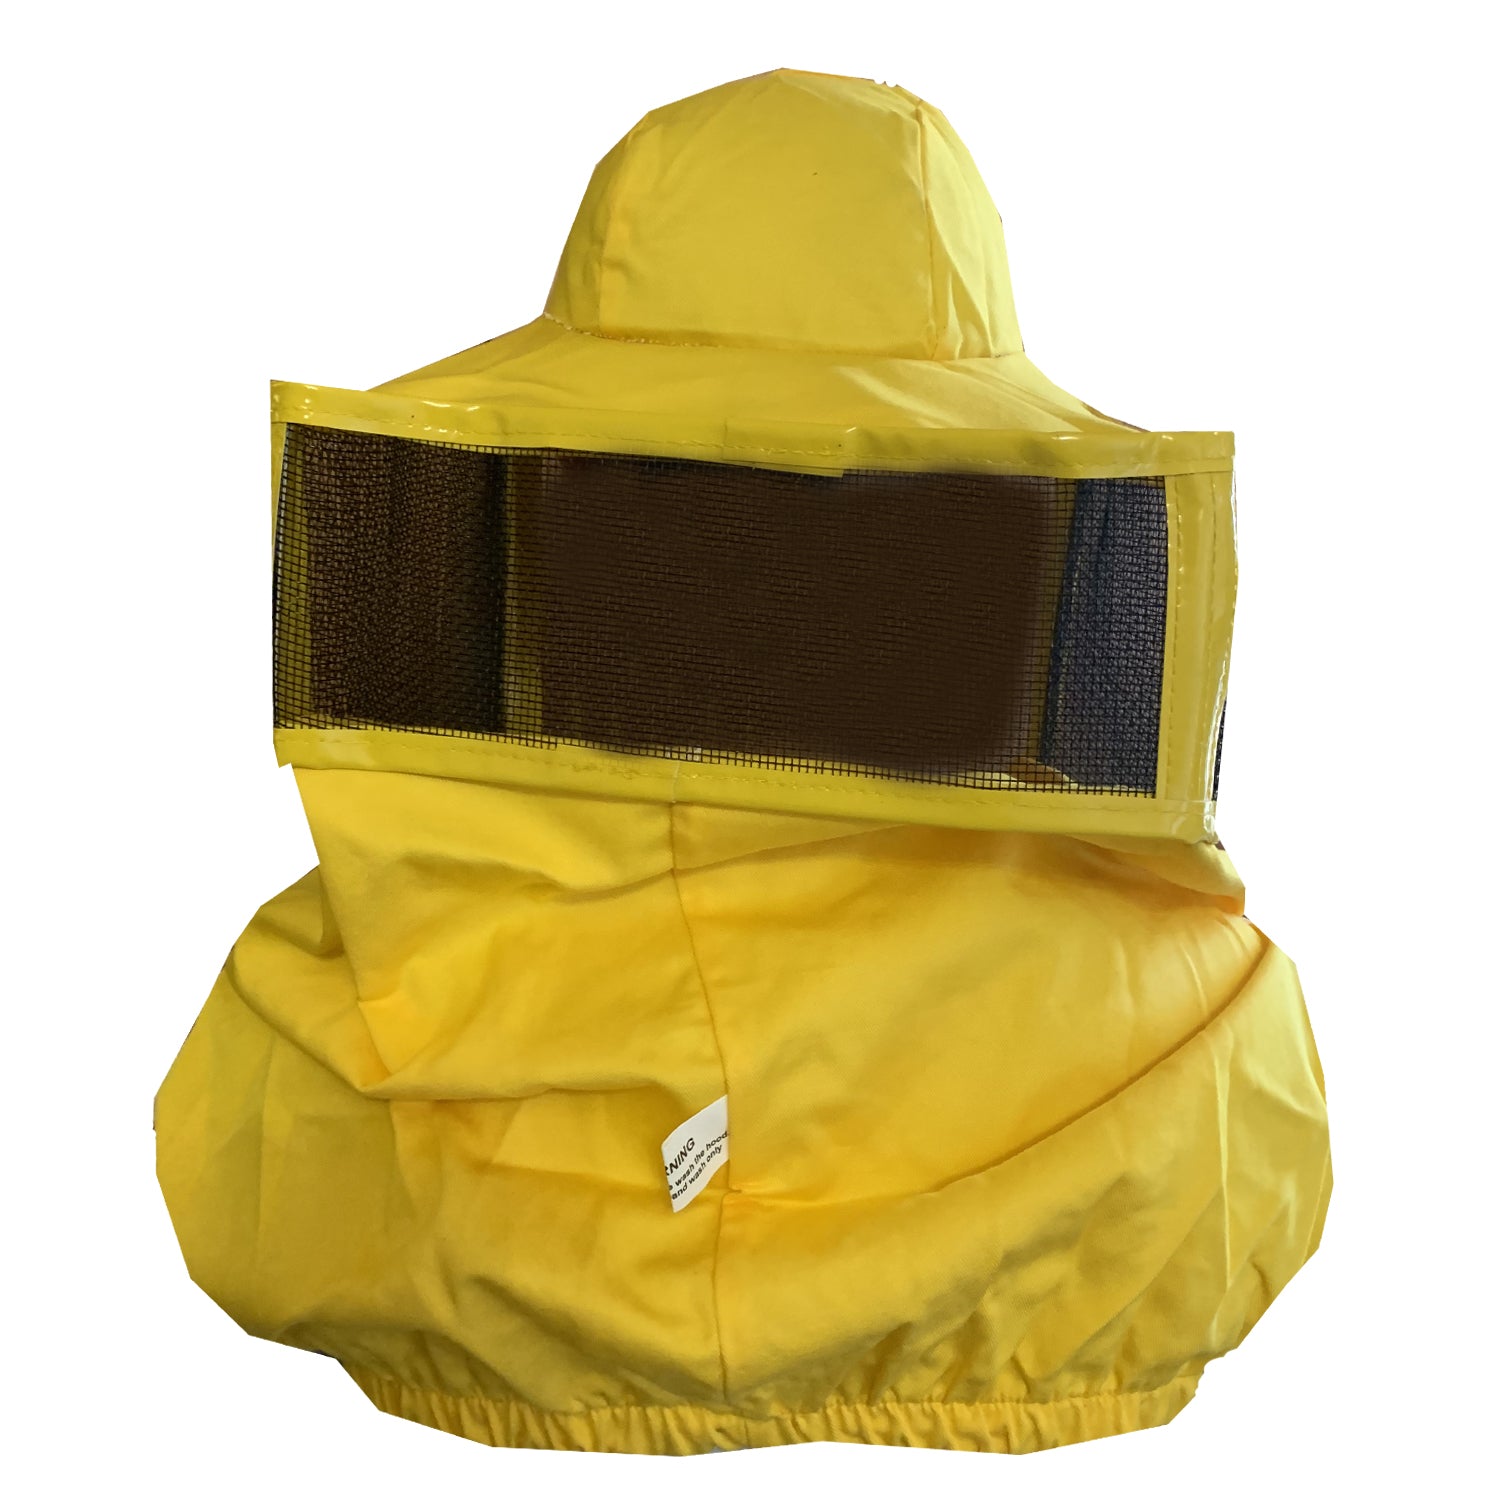 Acquista Velo da apicoltore giallo in policotone con protezione contro le punture di api